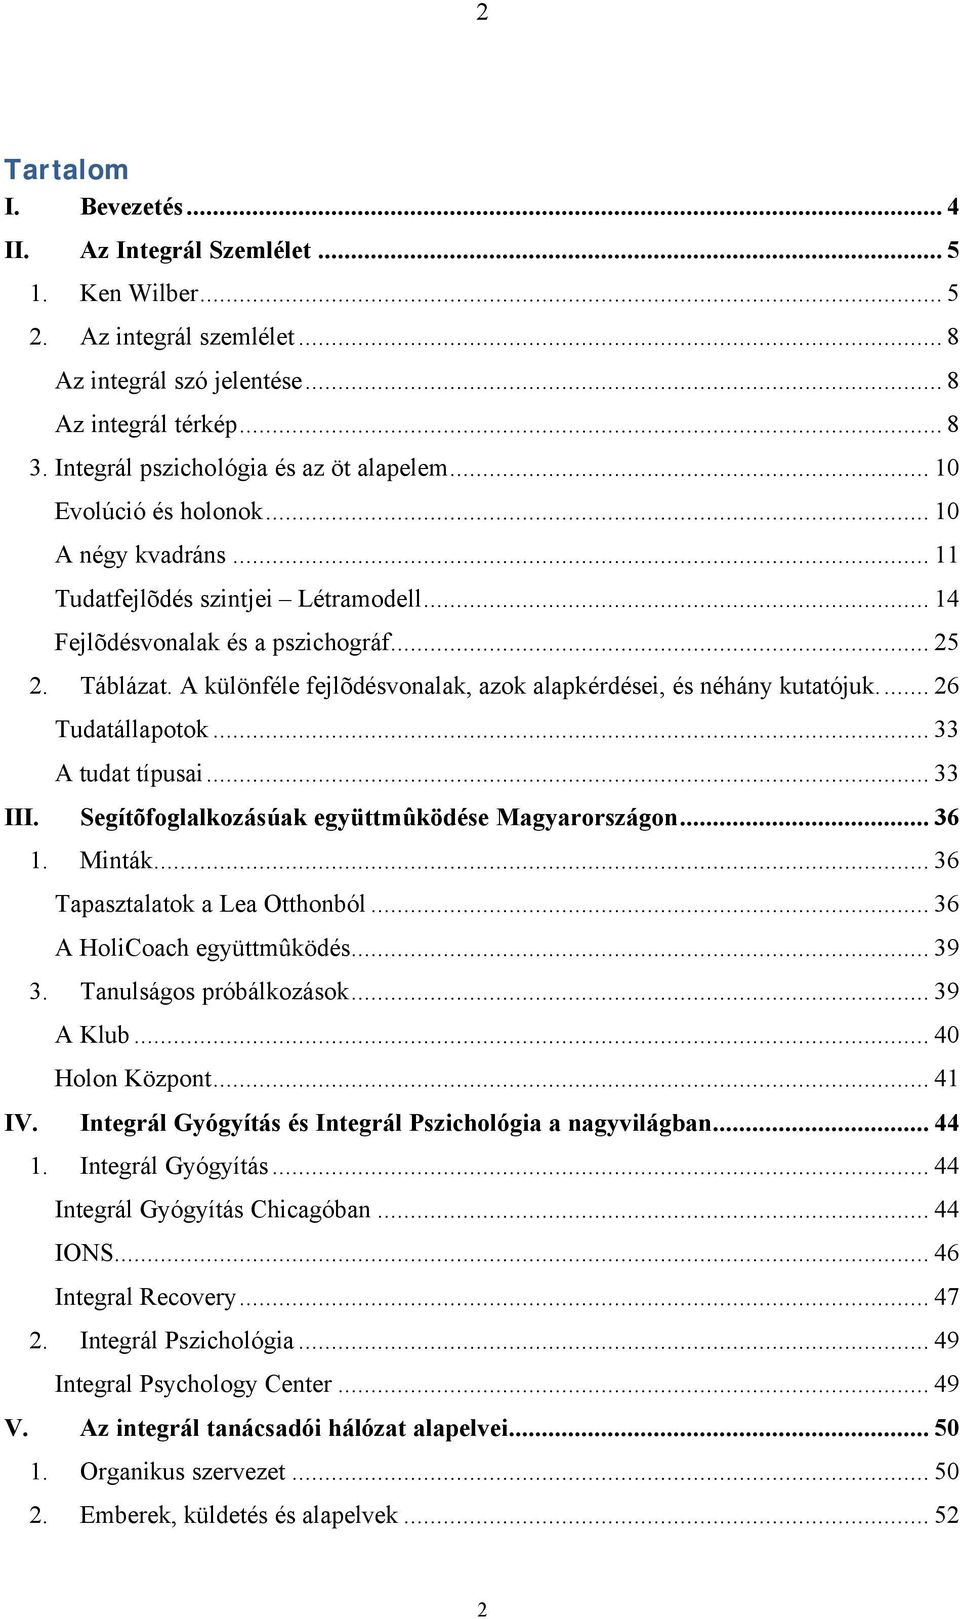 A különféle fejlõdésvonalak, azok alapkérdései, és néhány kutatójuk... 26 Tudatállapotok... 33 A tudat típusai... 33 III. Segítõfoglalkozásúak együttmûködése Magyarországon... 36 1. Minták.